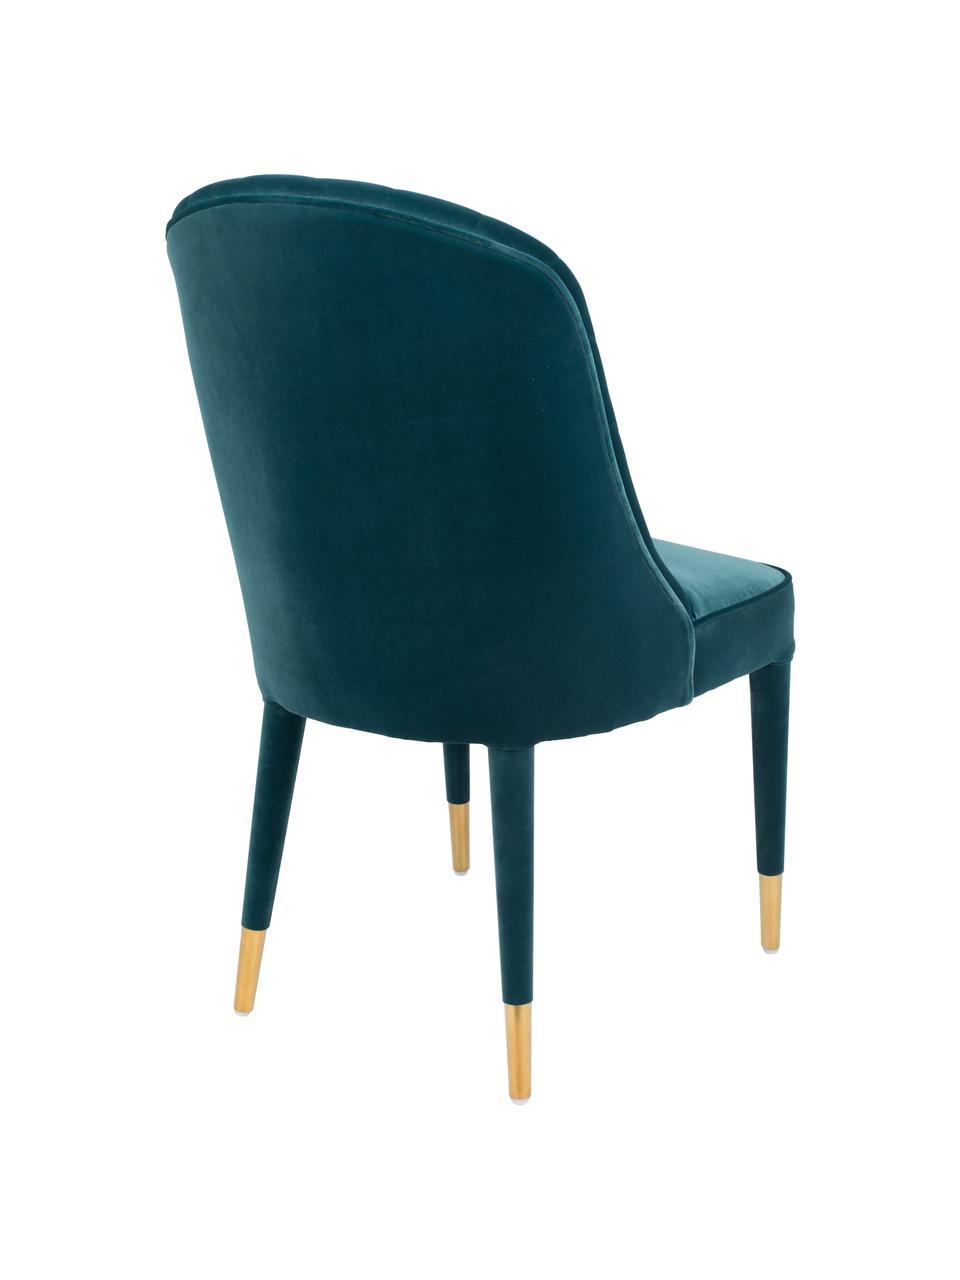 Krzesło z aksamitu Give Me More, Tapicerka: 100% aksamit poliestrowy , Stelaż: drewno warstwowe, Nogi: drewno kauczukowe, Niebieski, odcienie mosiądzu, S 51 x G 61 cm